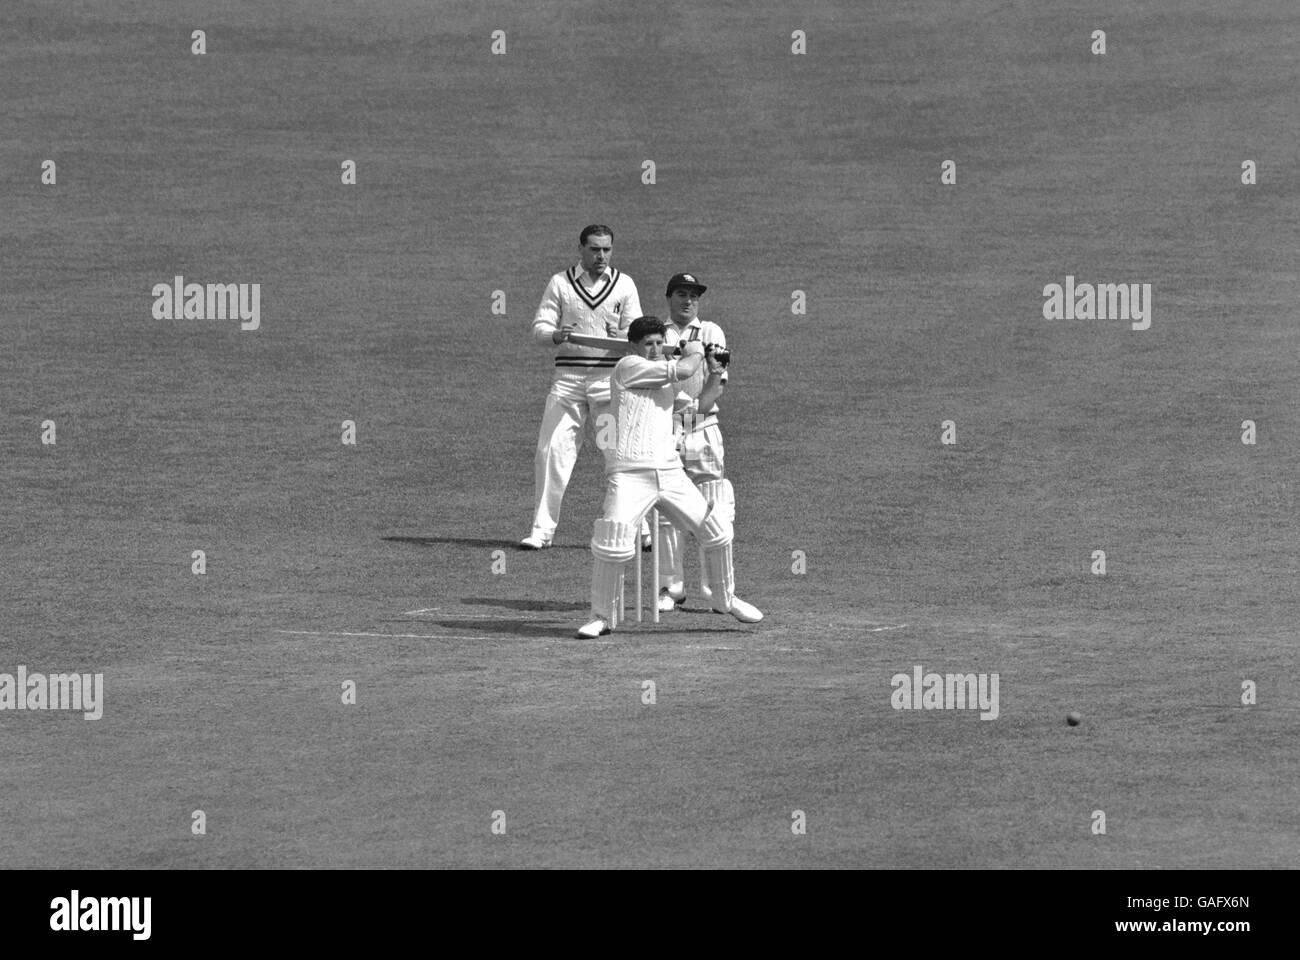 Cricket - Marylebone Cricket Club / Surrey - secondo giorno. Batting di Surrey's Ken Barrington (fronte) Foto Stock